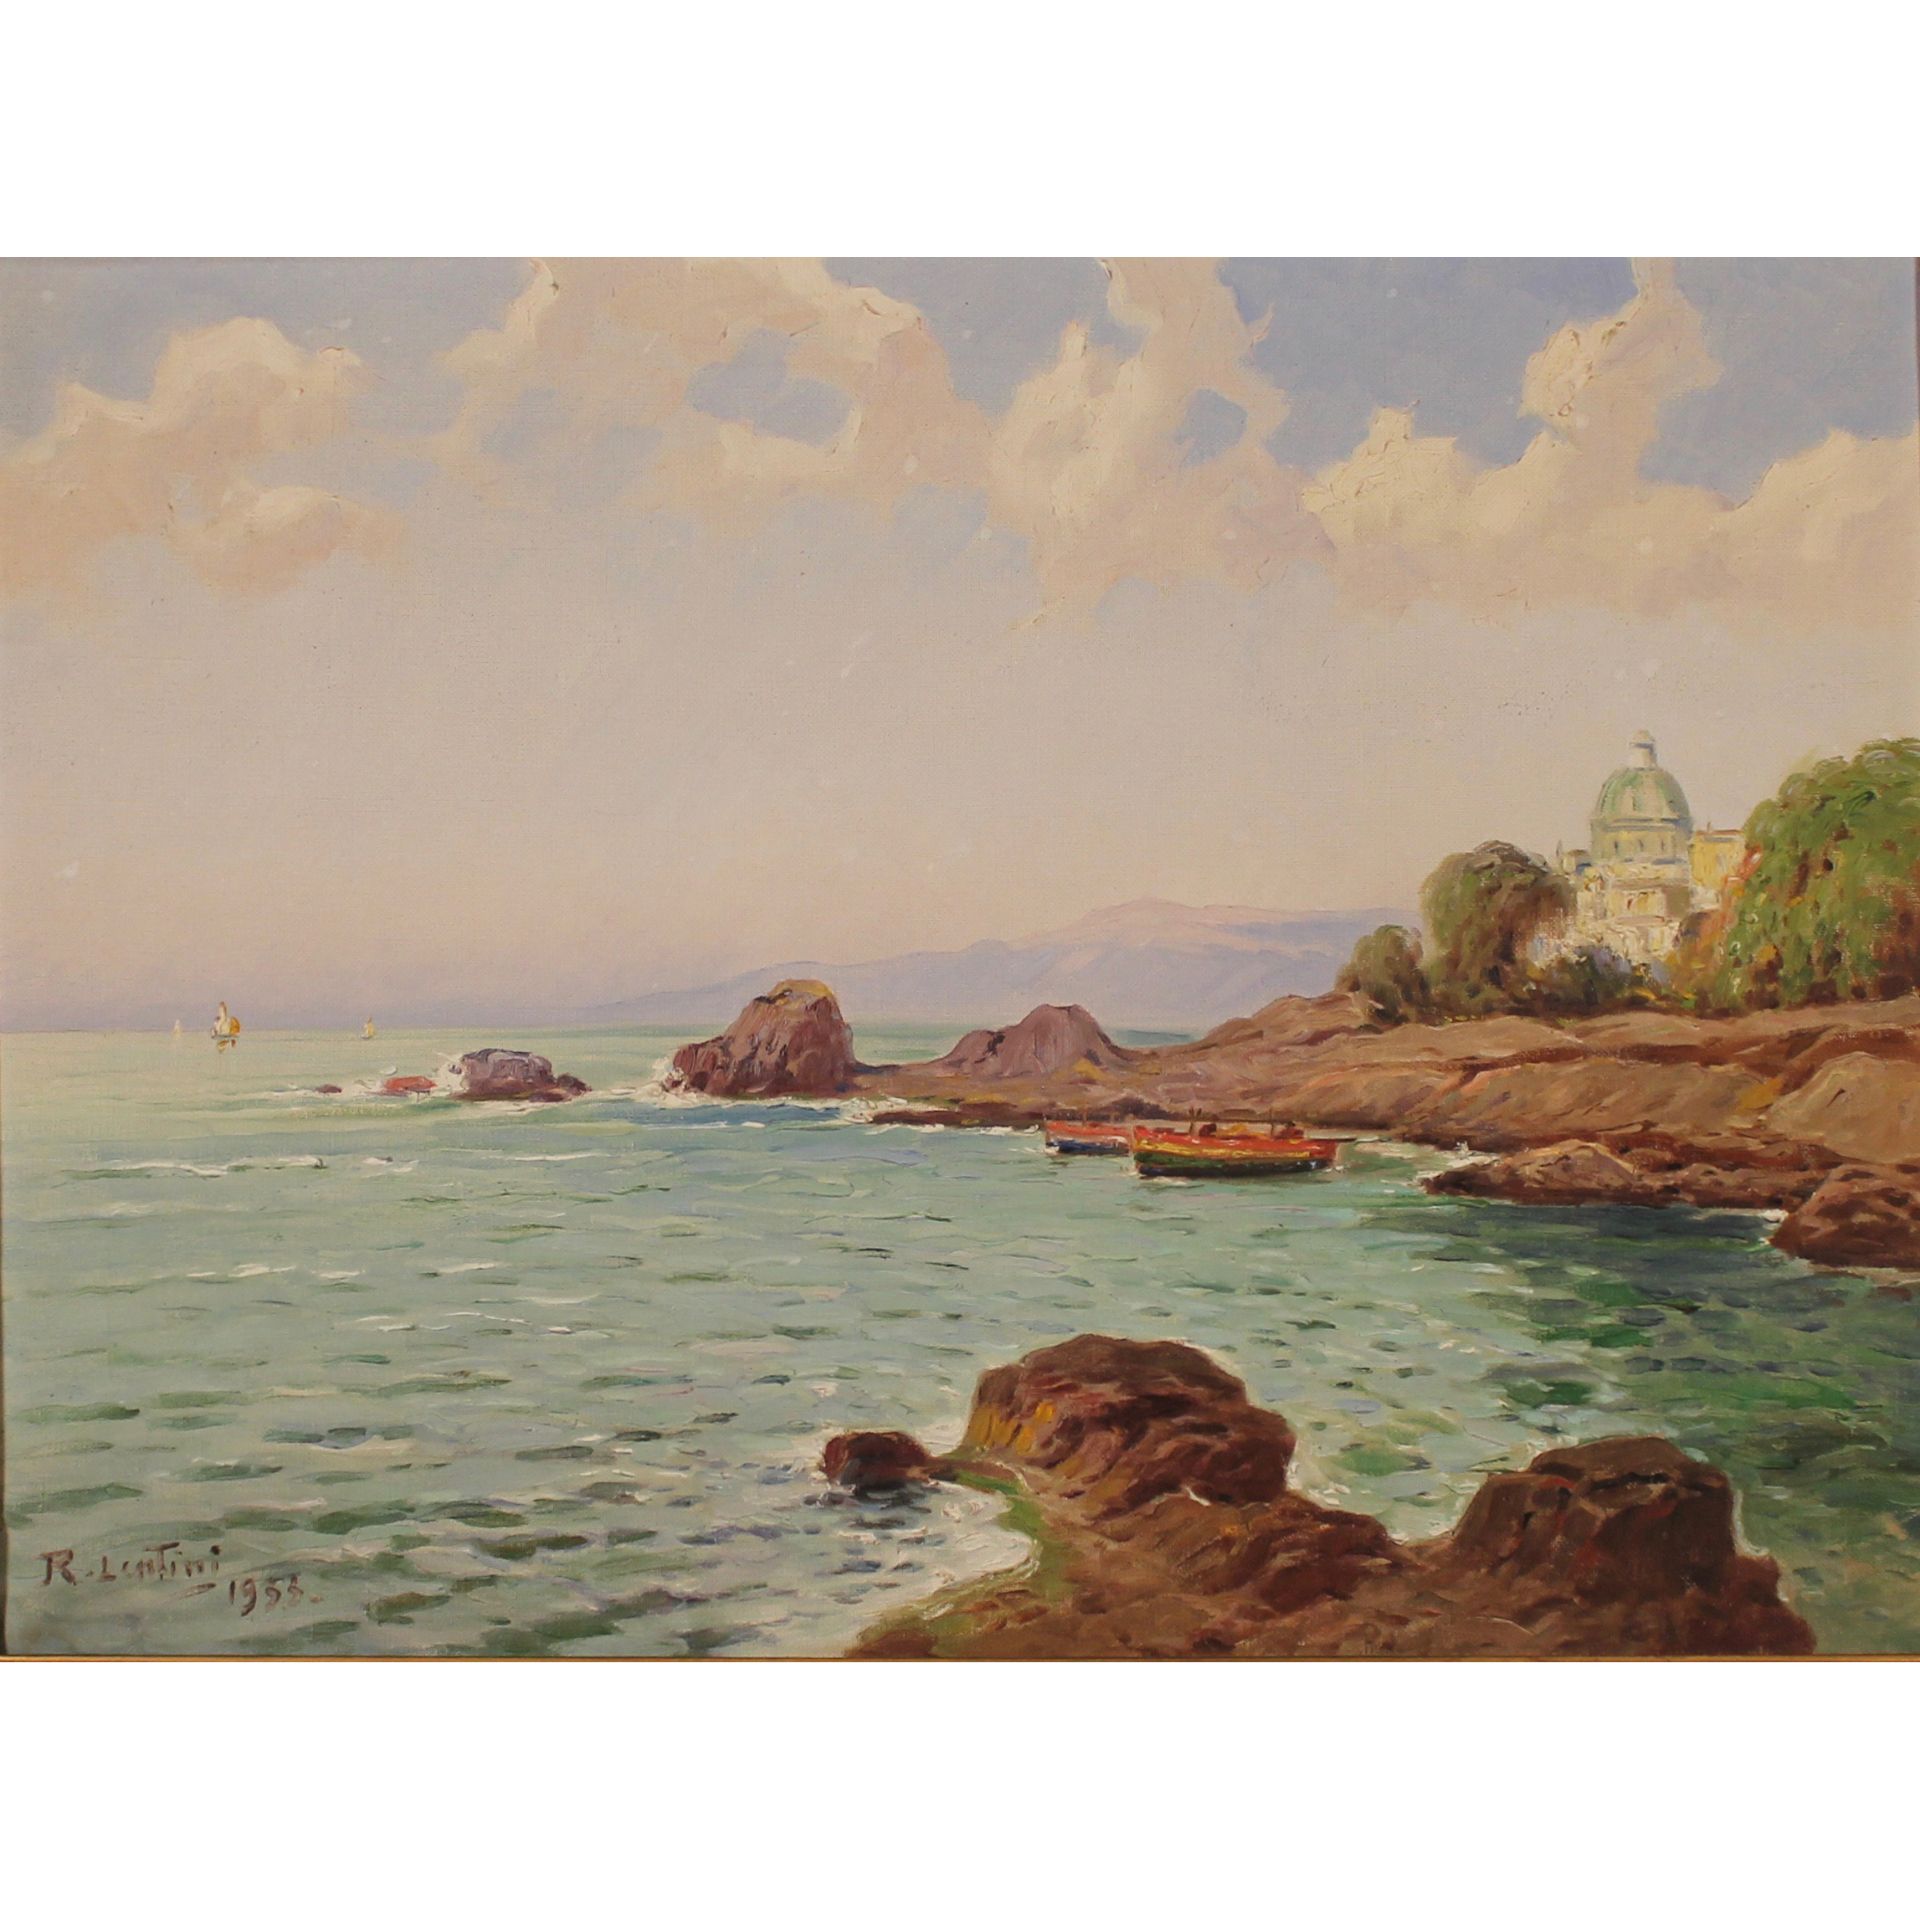 ROCCO LENTINI (1858-1943) "Marina con barche di pescatori" - "Marina with fishing boats"